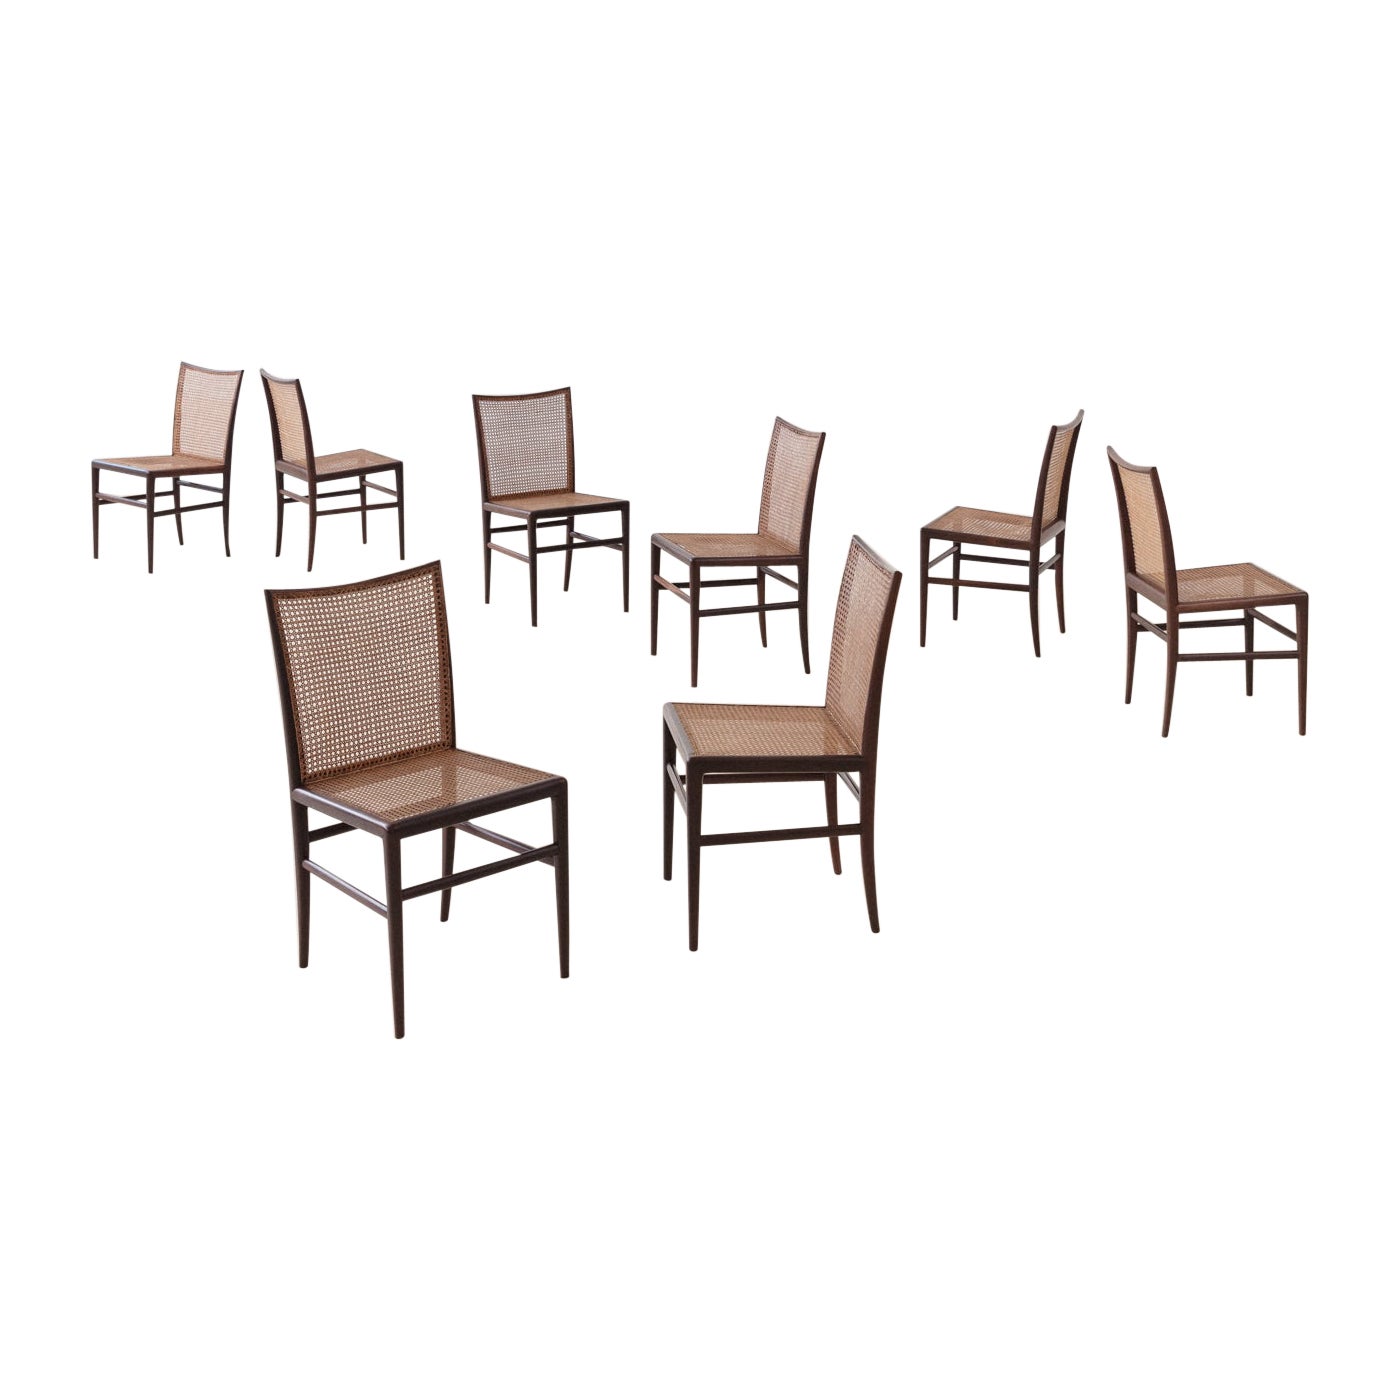 Ensemble de 8 chaises en bois de rose, Branco & Preto, 1952, brésilien du milieu du siècle dernier